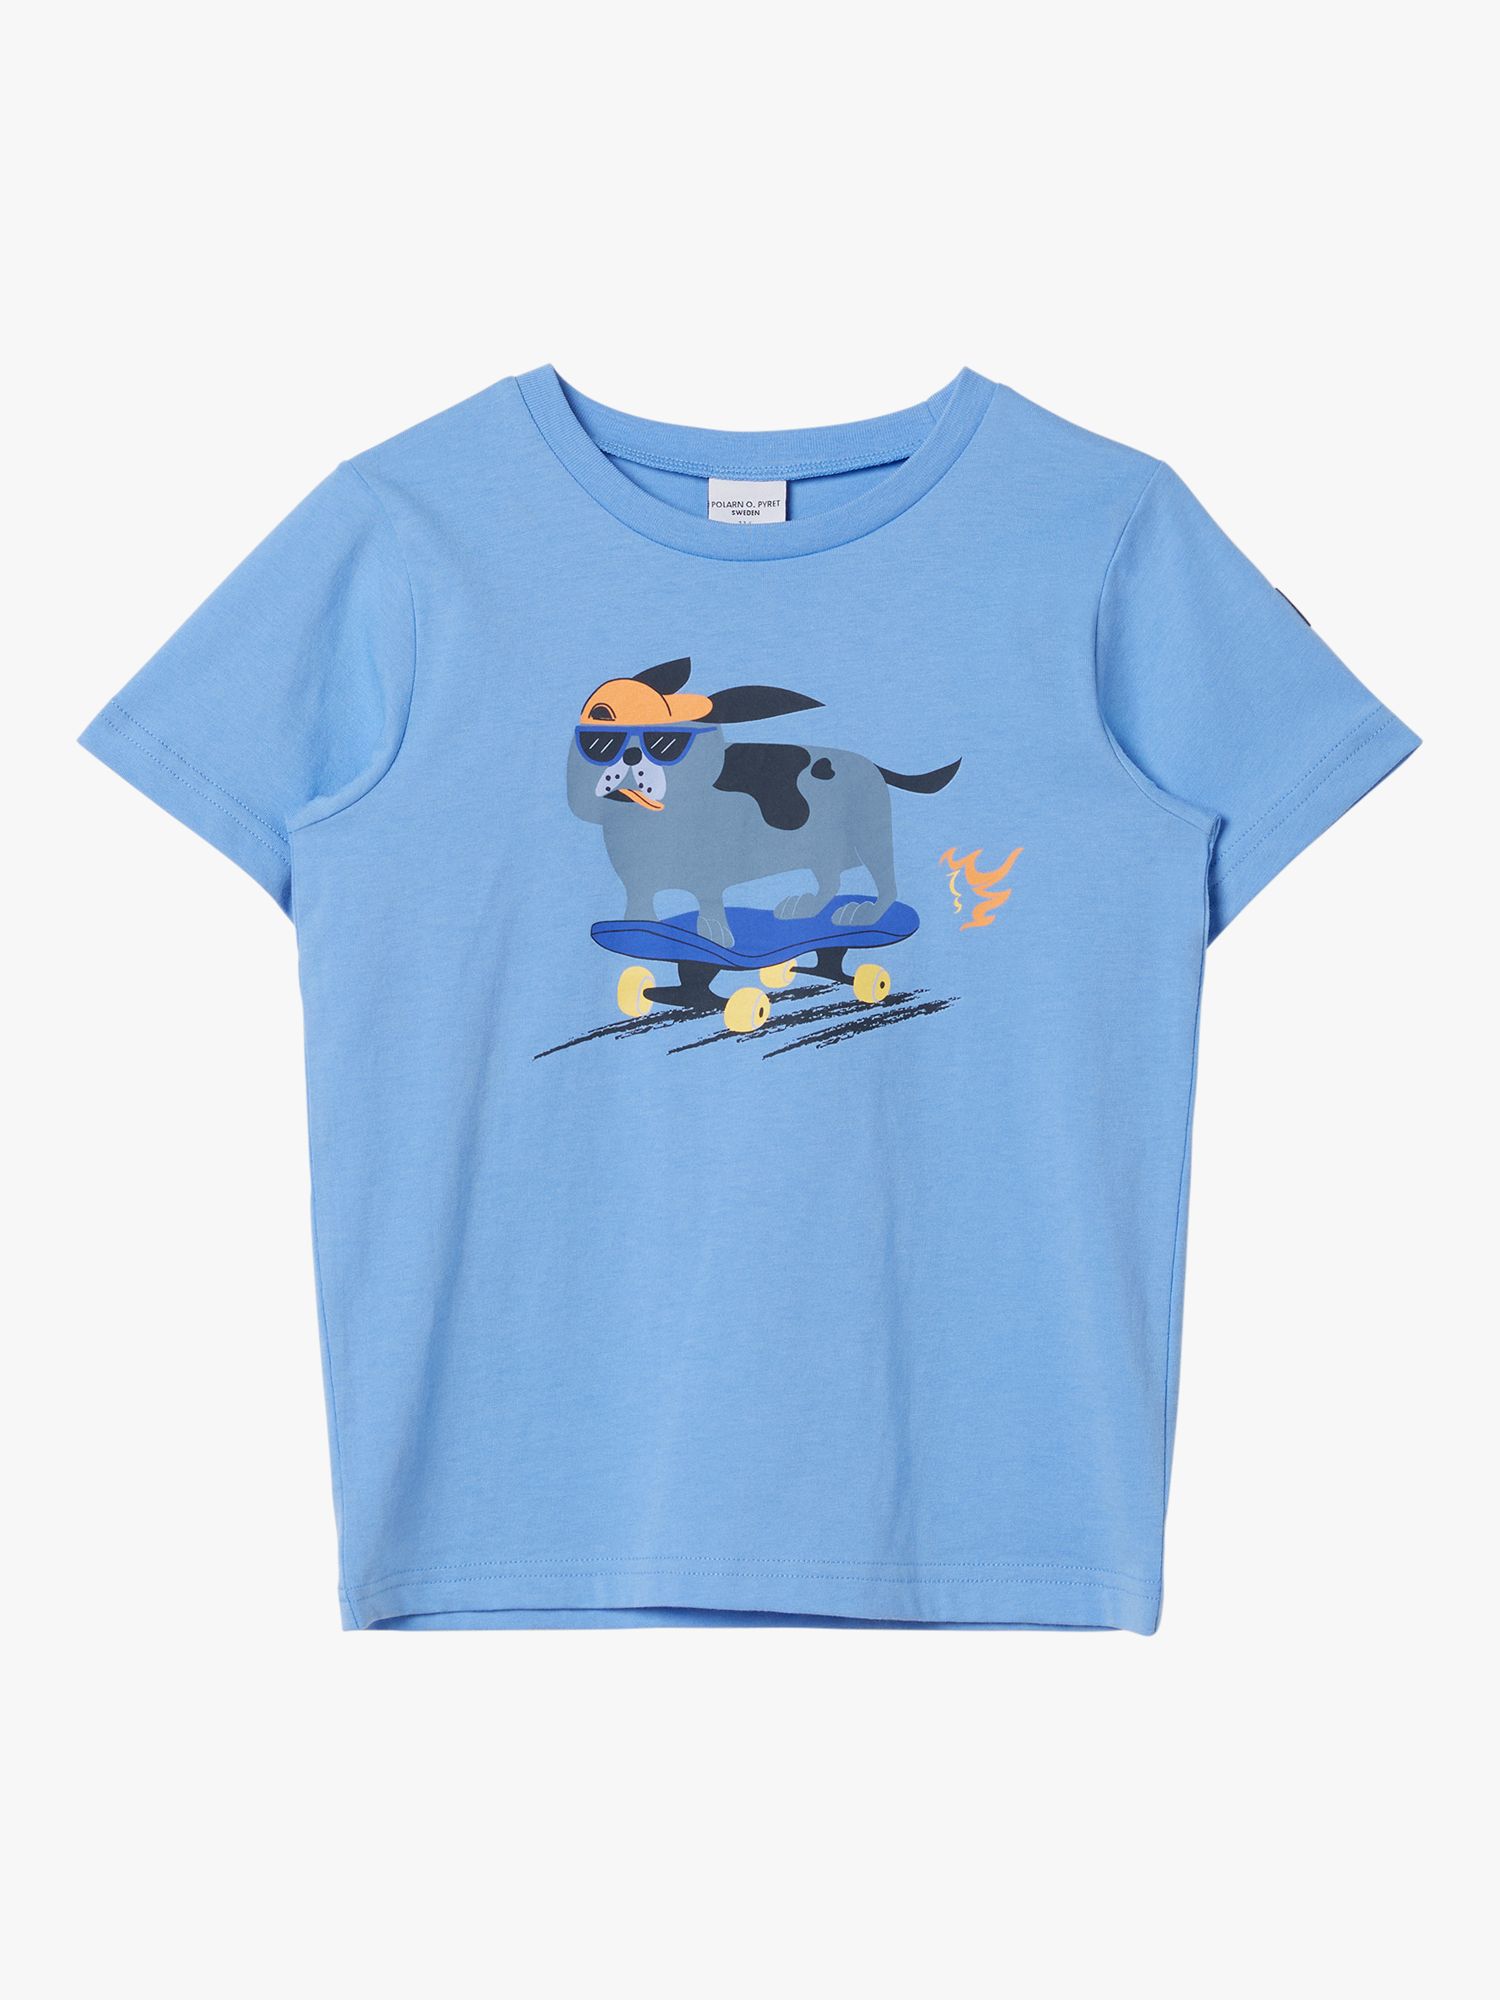 Polarn O. Pyret Kids' GOTS Organic Cotton Dog T-Shirt, Blue, 12-18 months